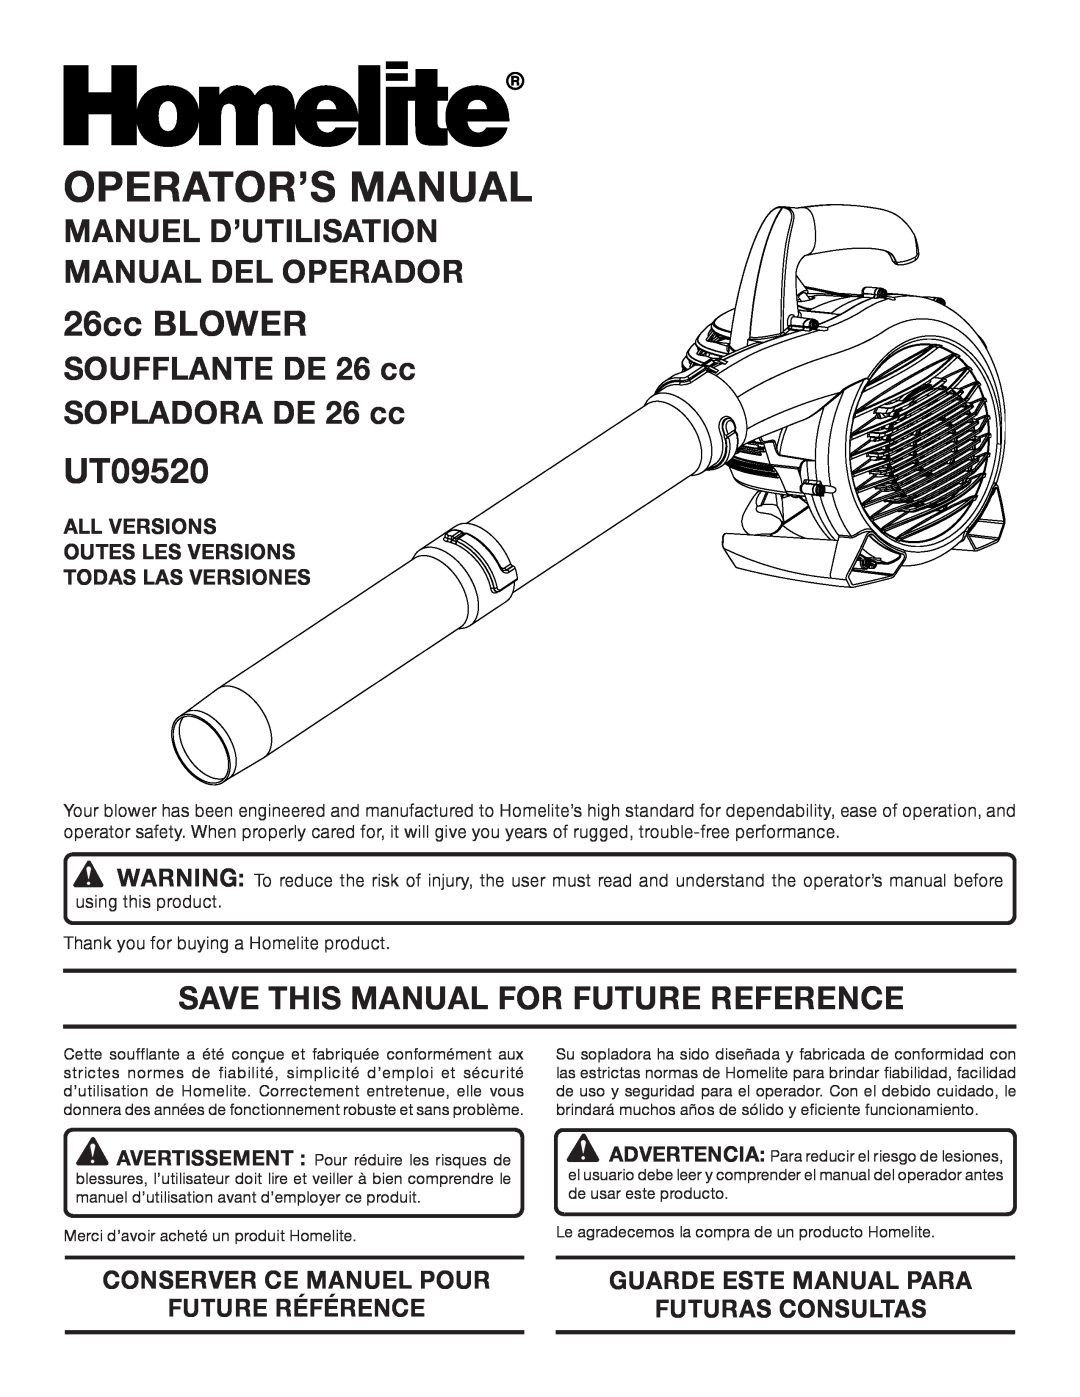 Homelite UT09520 manuel dutilisation 26cc BLOWER, Manuel D’Utilisation Manual Del Operador, Conserver Ce Manuel Pour 